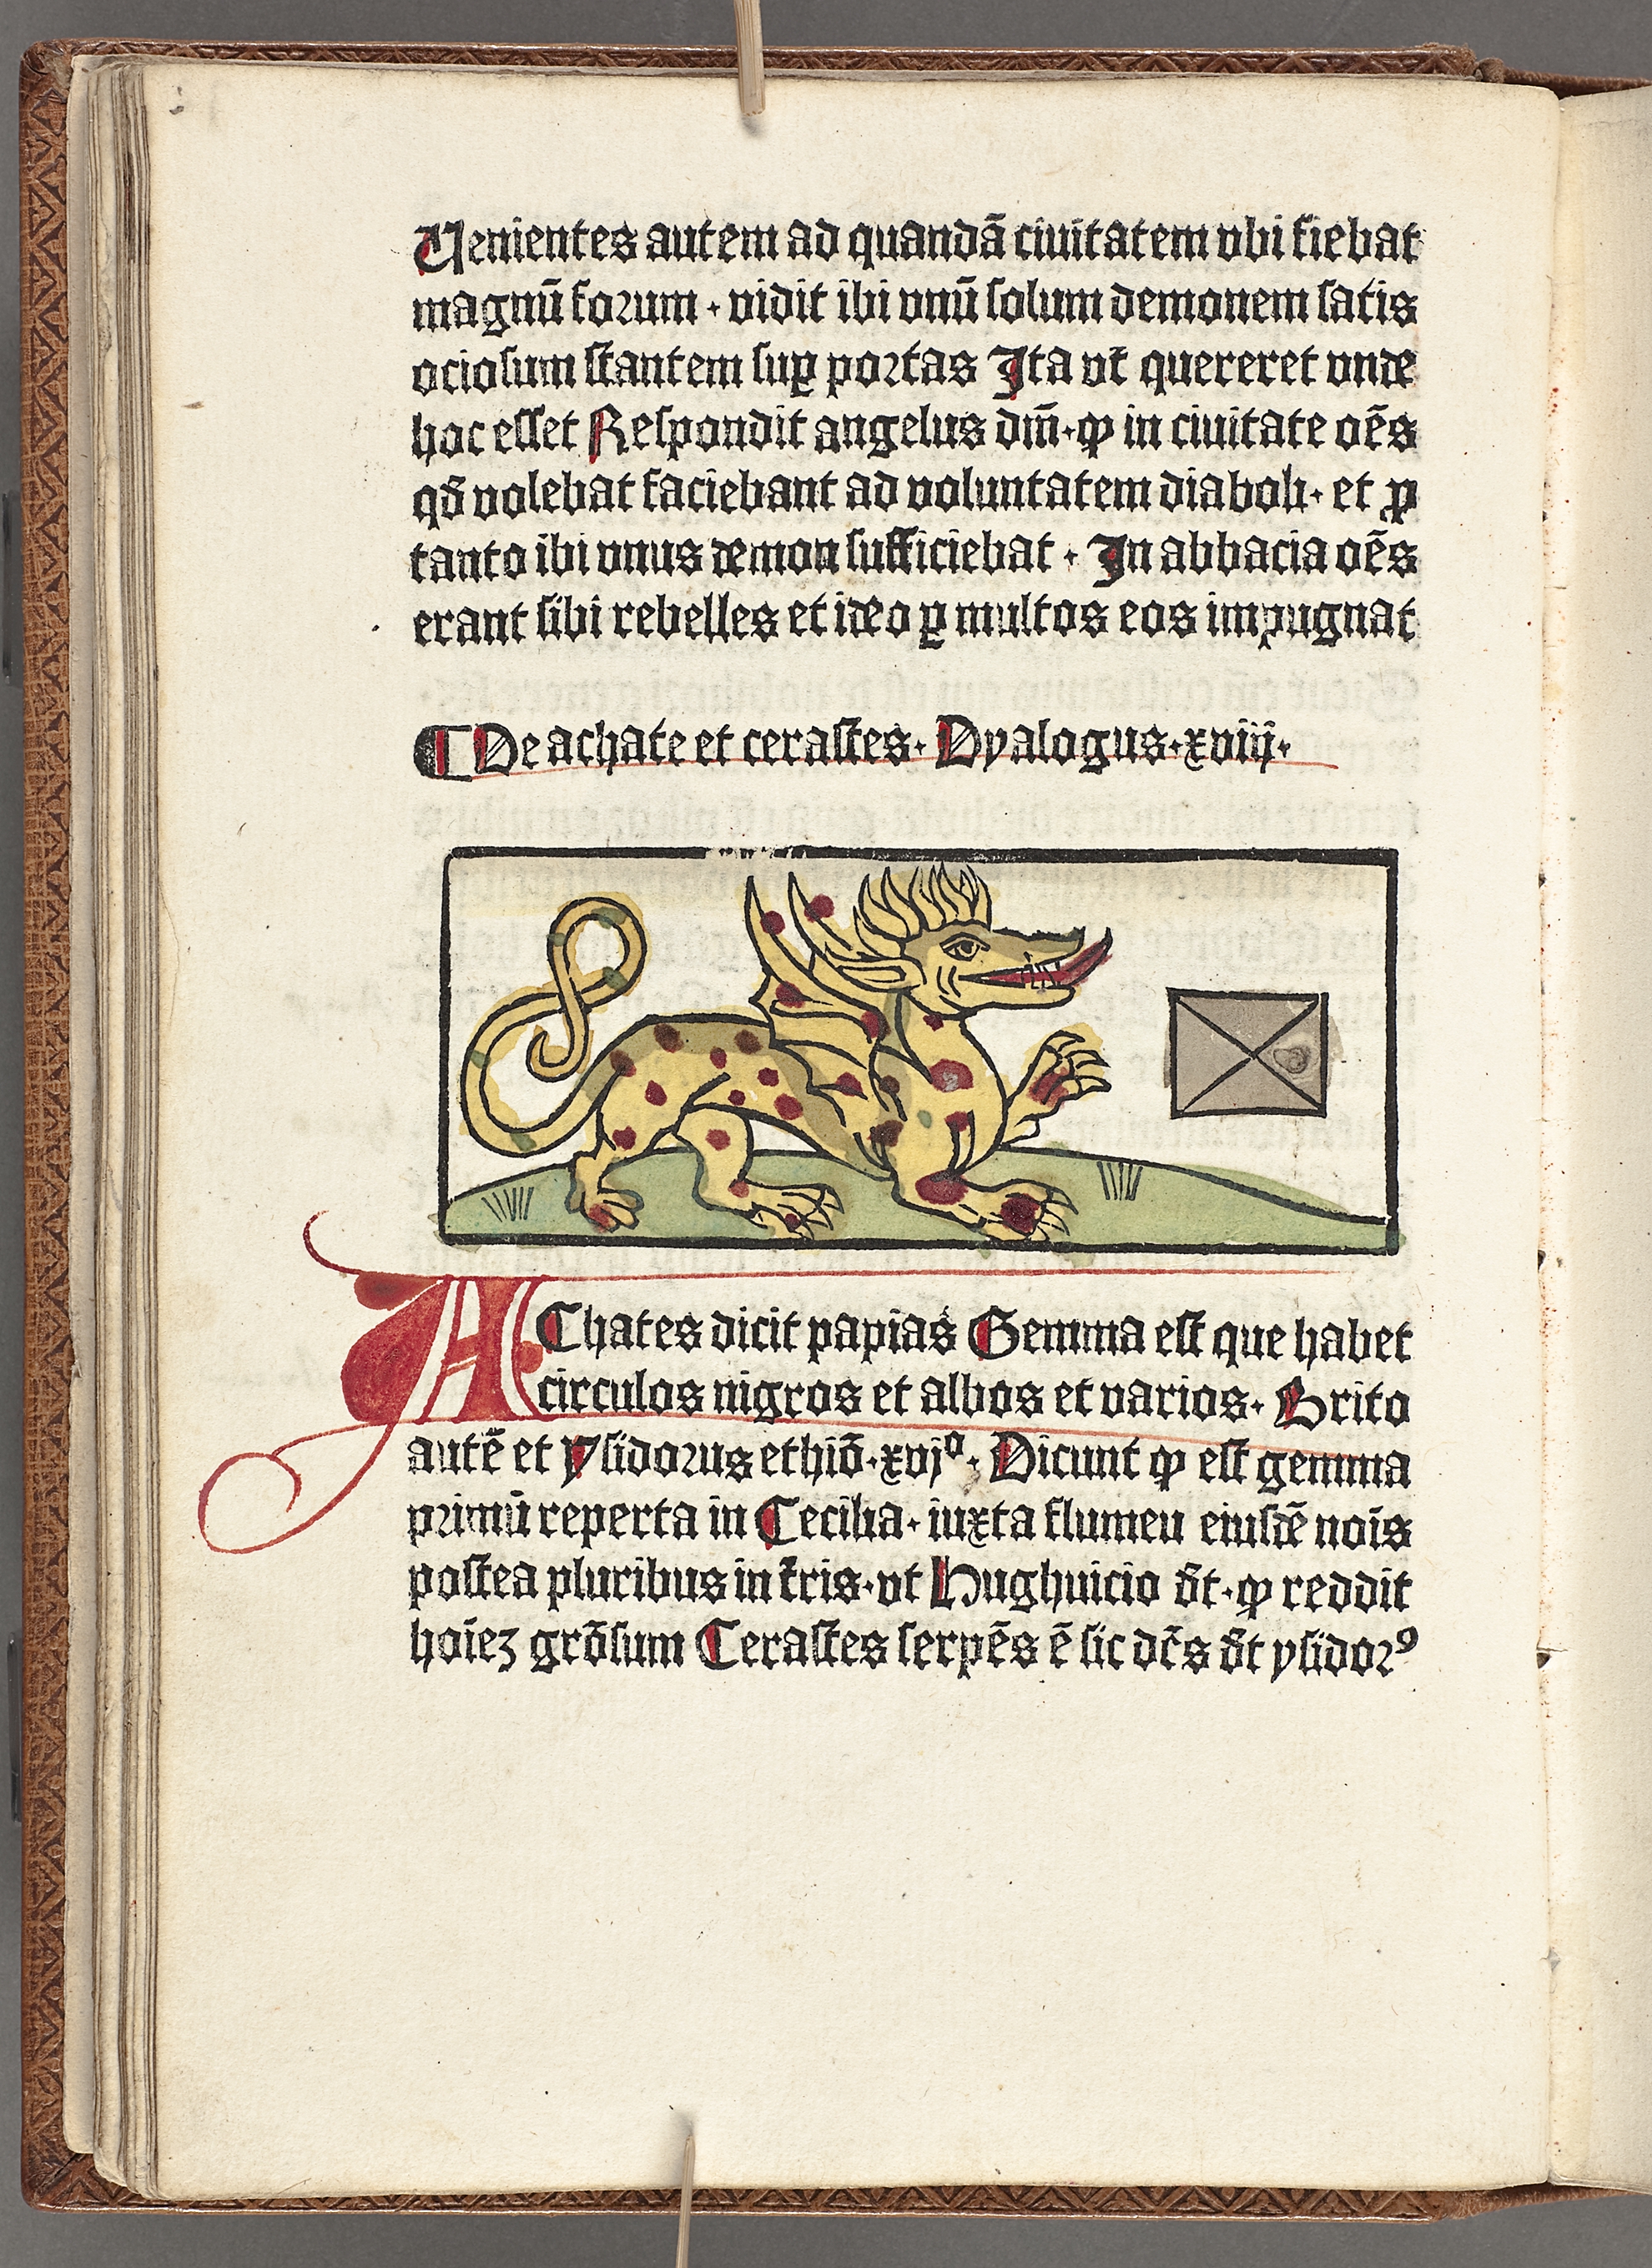 Gammal boksida med gotisk skrift. I mitten syns en drake med tungan utanför munnen.